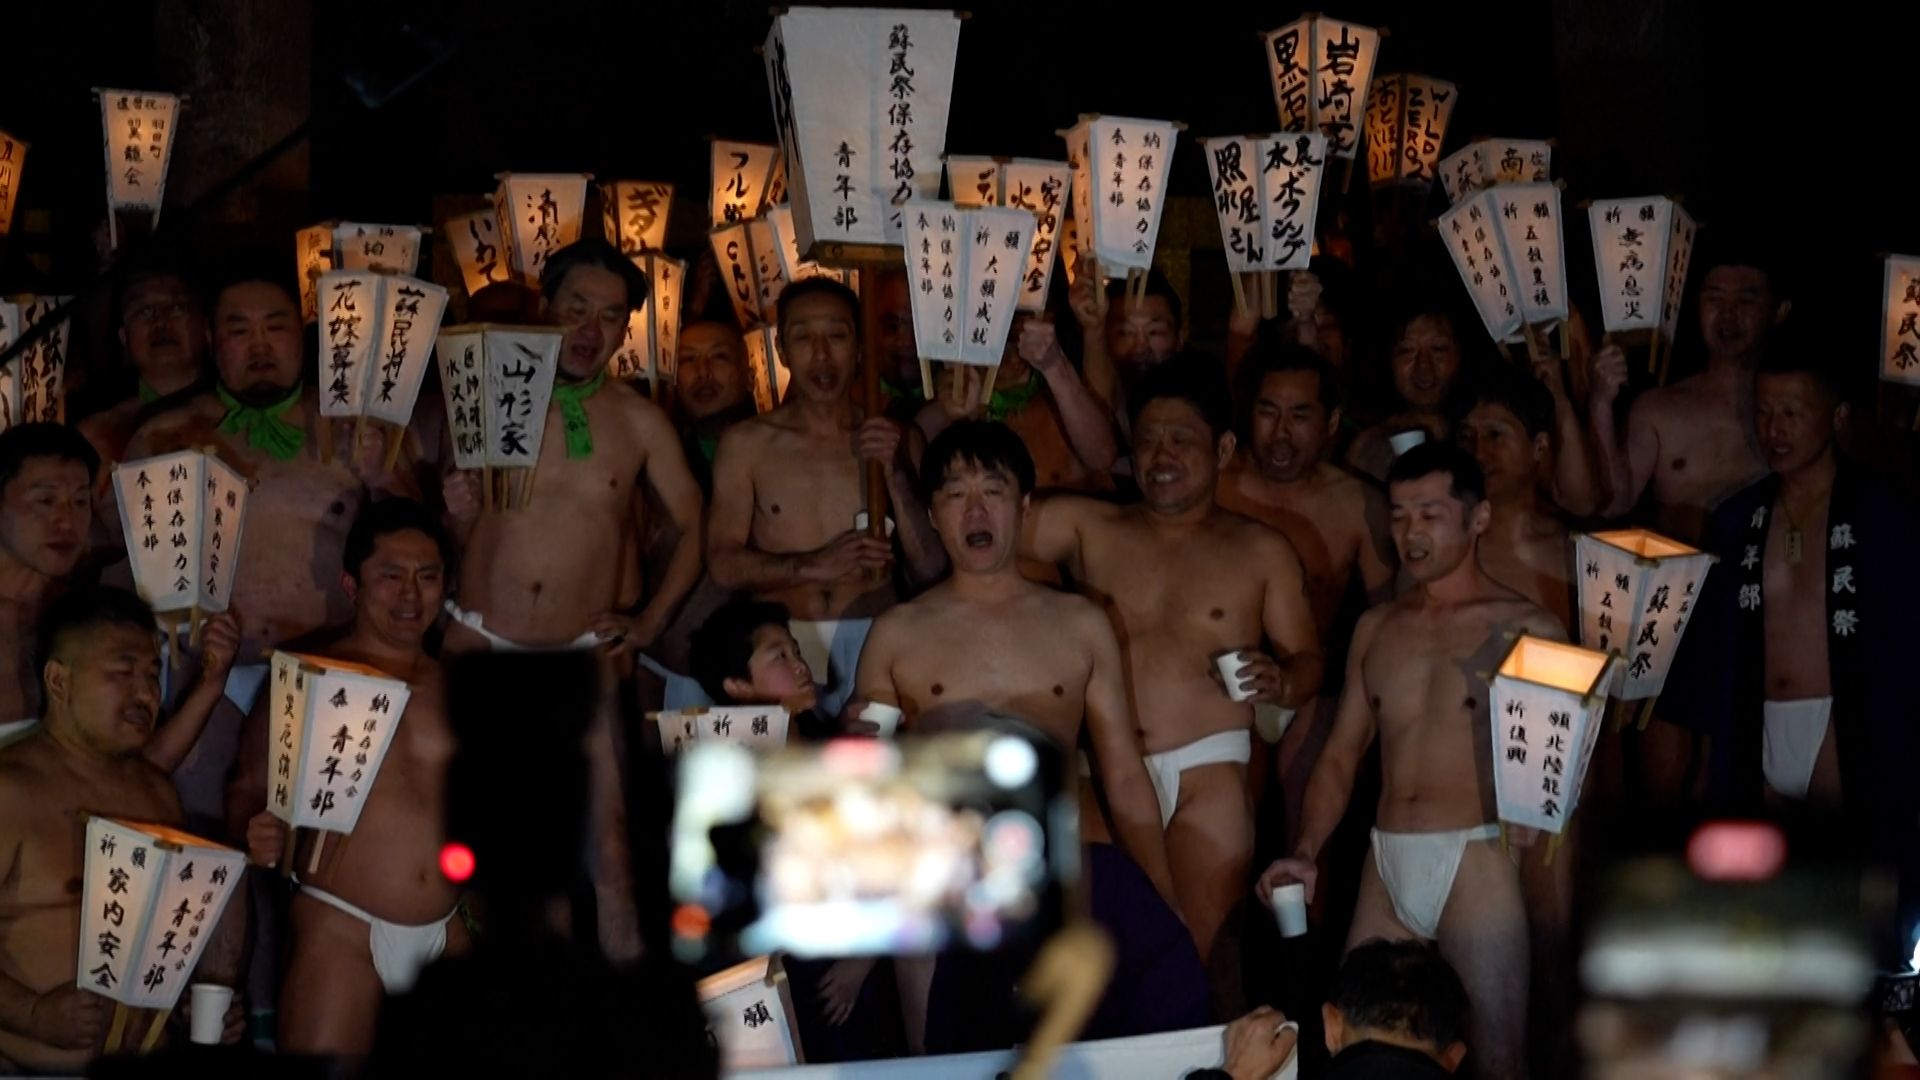 Ιαπωνία: Εκατοντάδες γυμνοί άντρες «έδιωξαν το κακό» σε παραδοσιακό τελετουργικό (video)